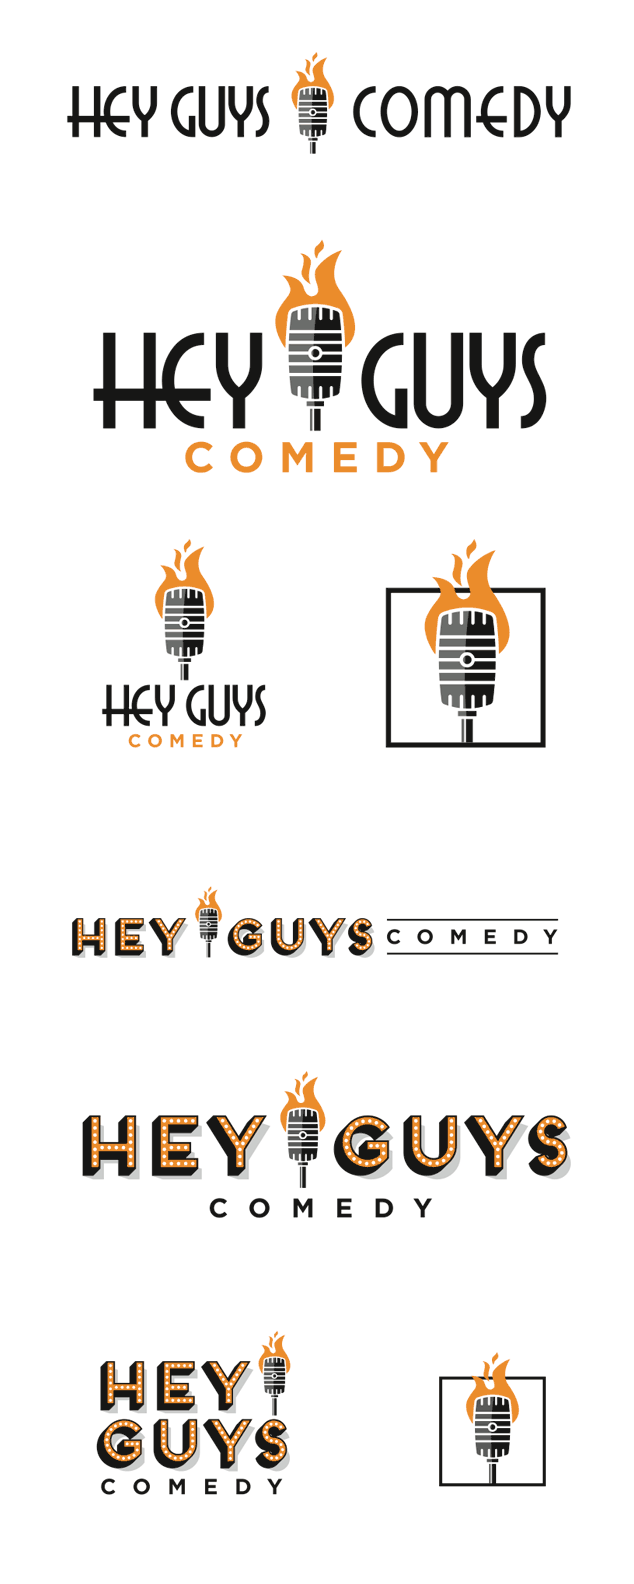 Hey Guys Comedy final 2 logo design options